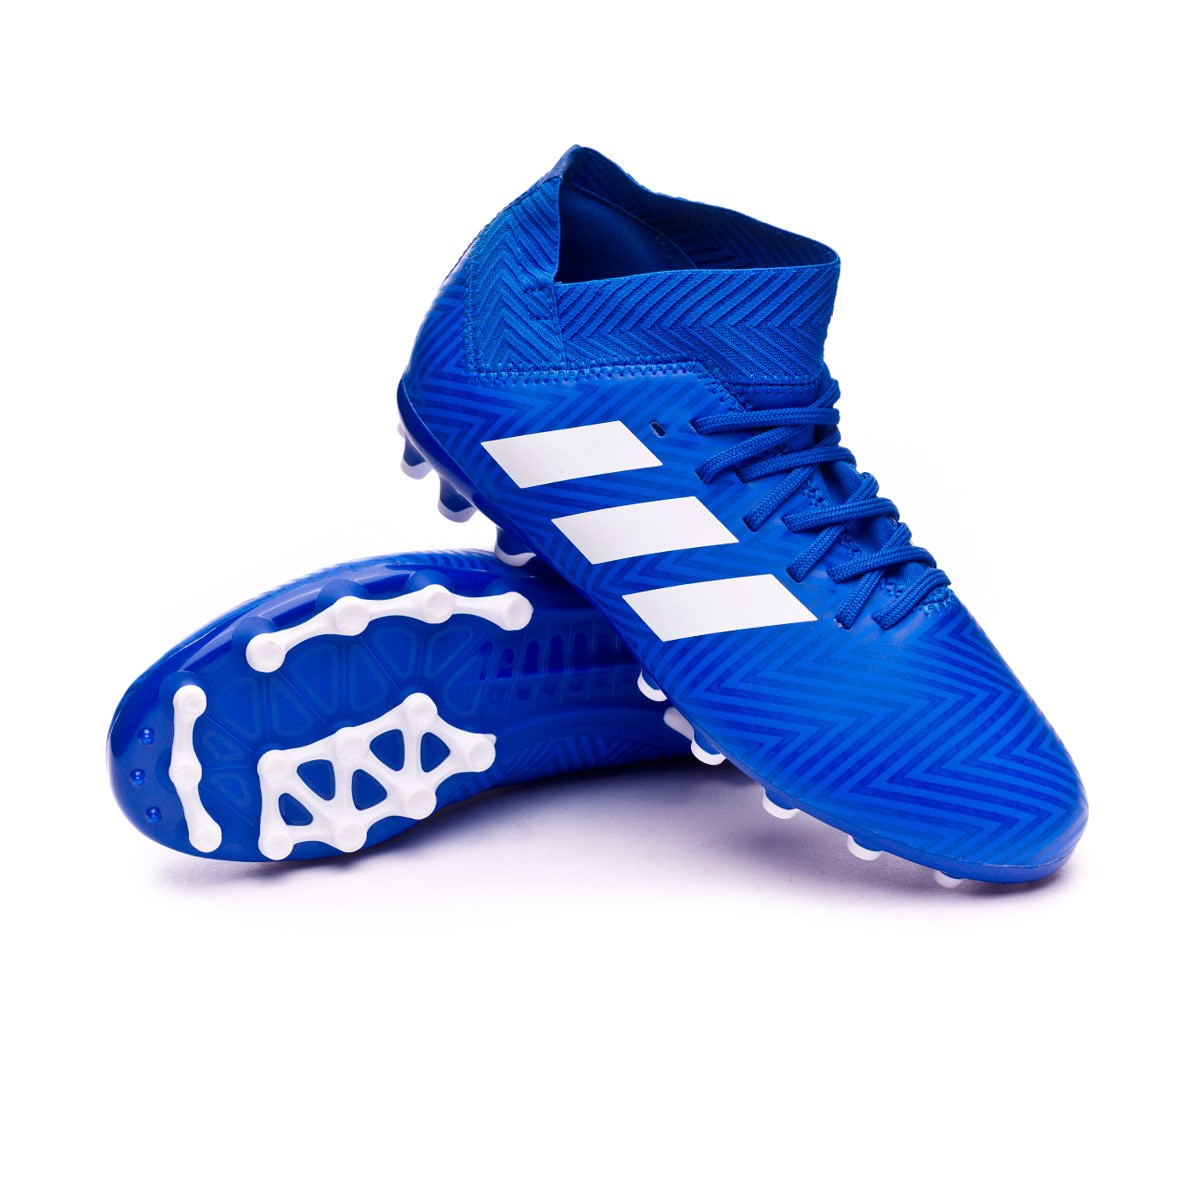 nemeziz adidas football boots